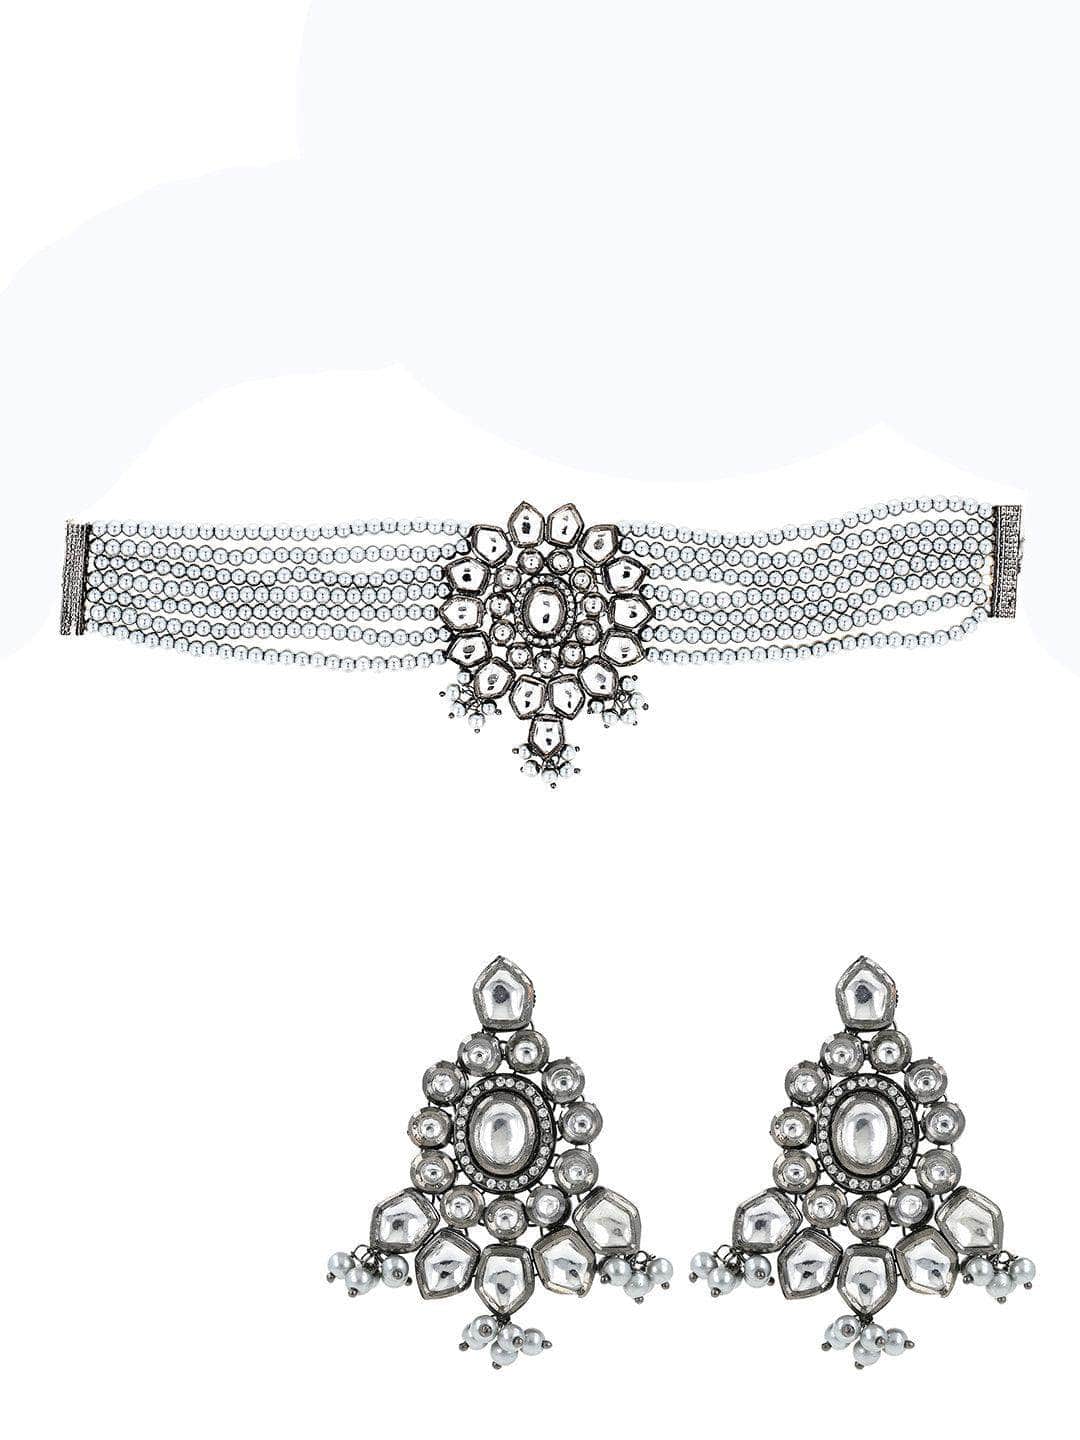 Ishhaara Enameled Oxidized Choker Necklace Set